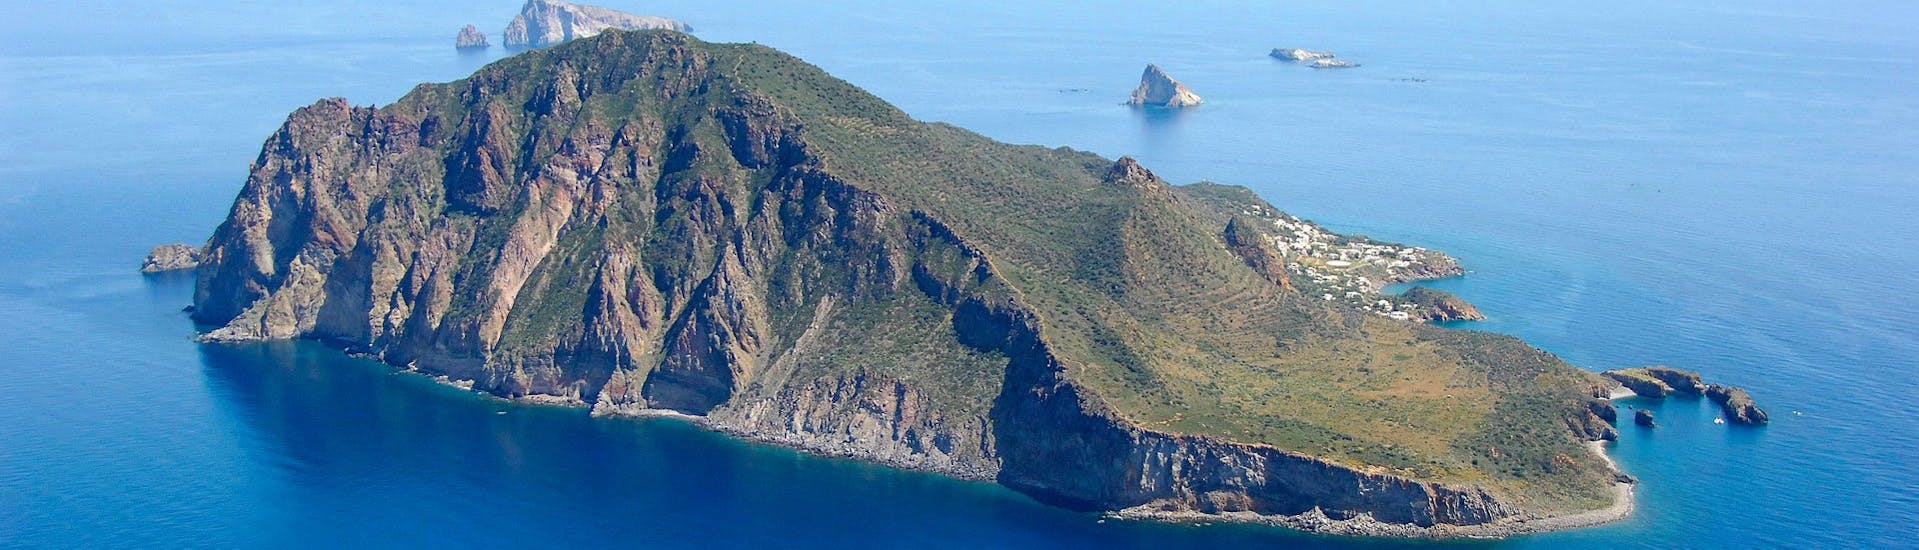 Imagen de la isla de Panarea.